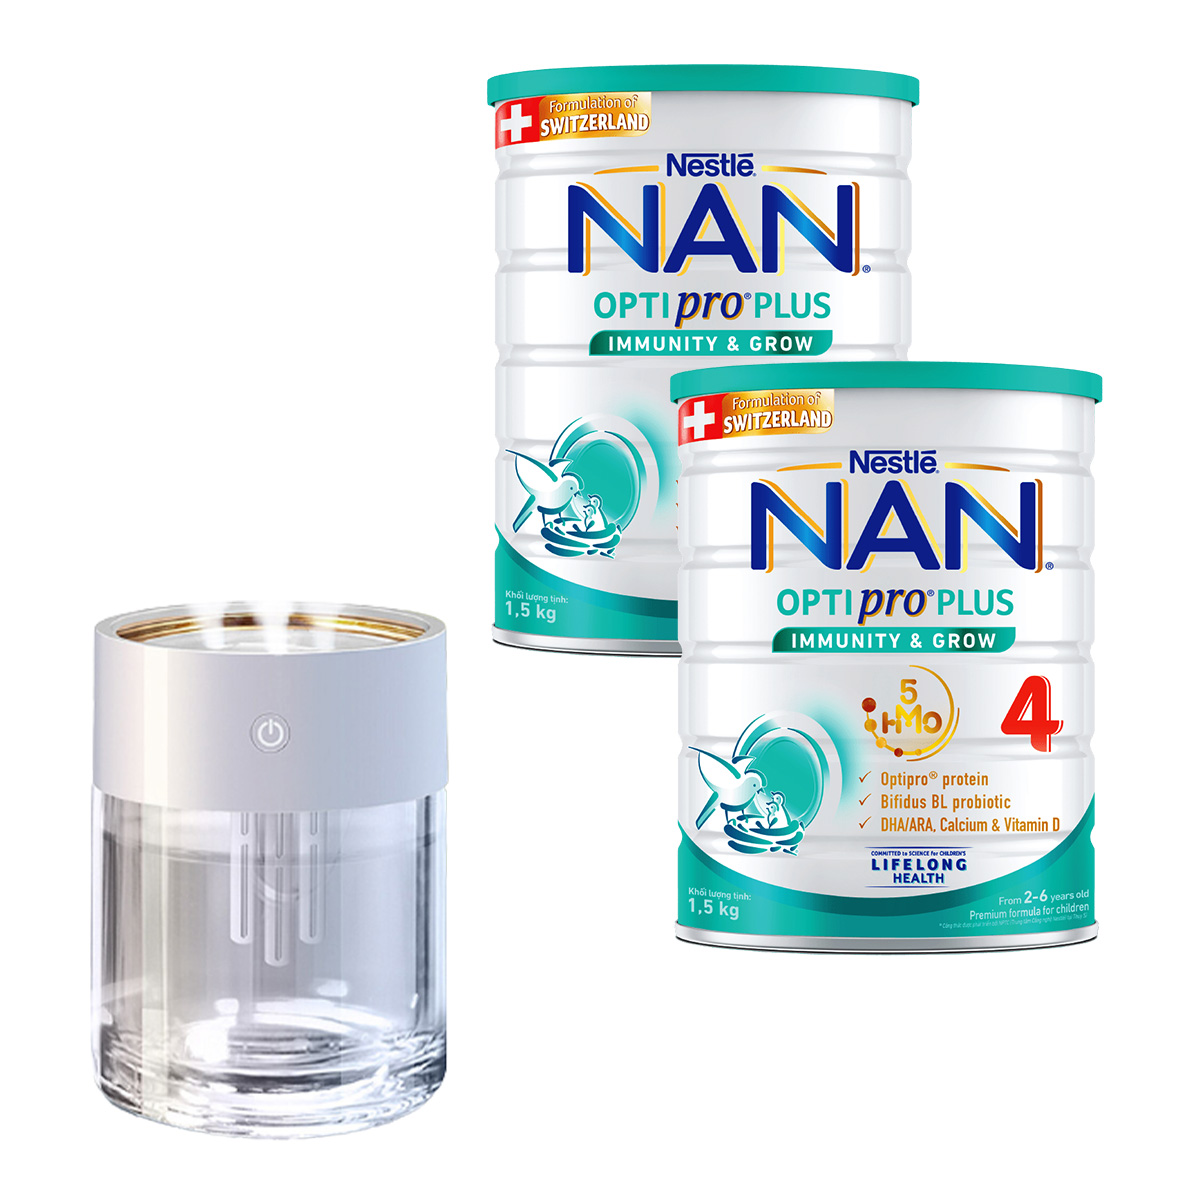 Bộ 2 Lon Sữa bột Nestlé NAN OPTIPRO PLUS 4 1500g/lon với 5HMO Giúp tiêu hóa tốt + Tăng cường đề kháng Tặng Máy phun sương đèn led (2 - 6 tuổi)